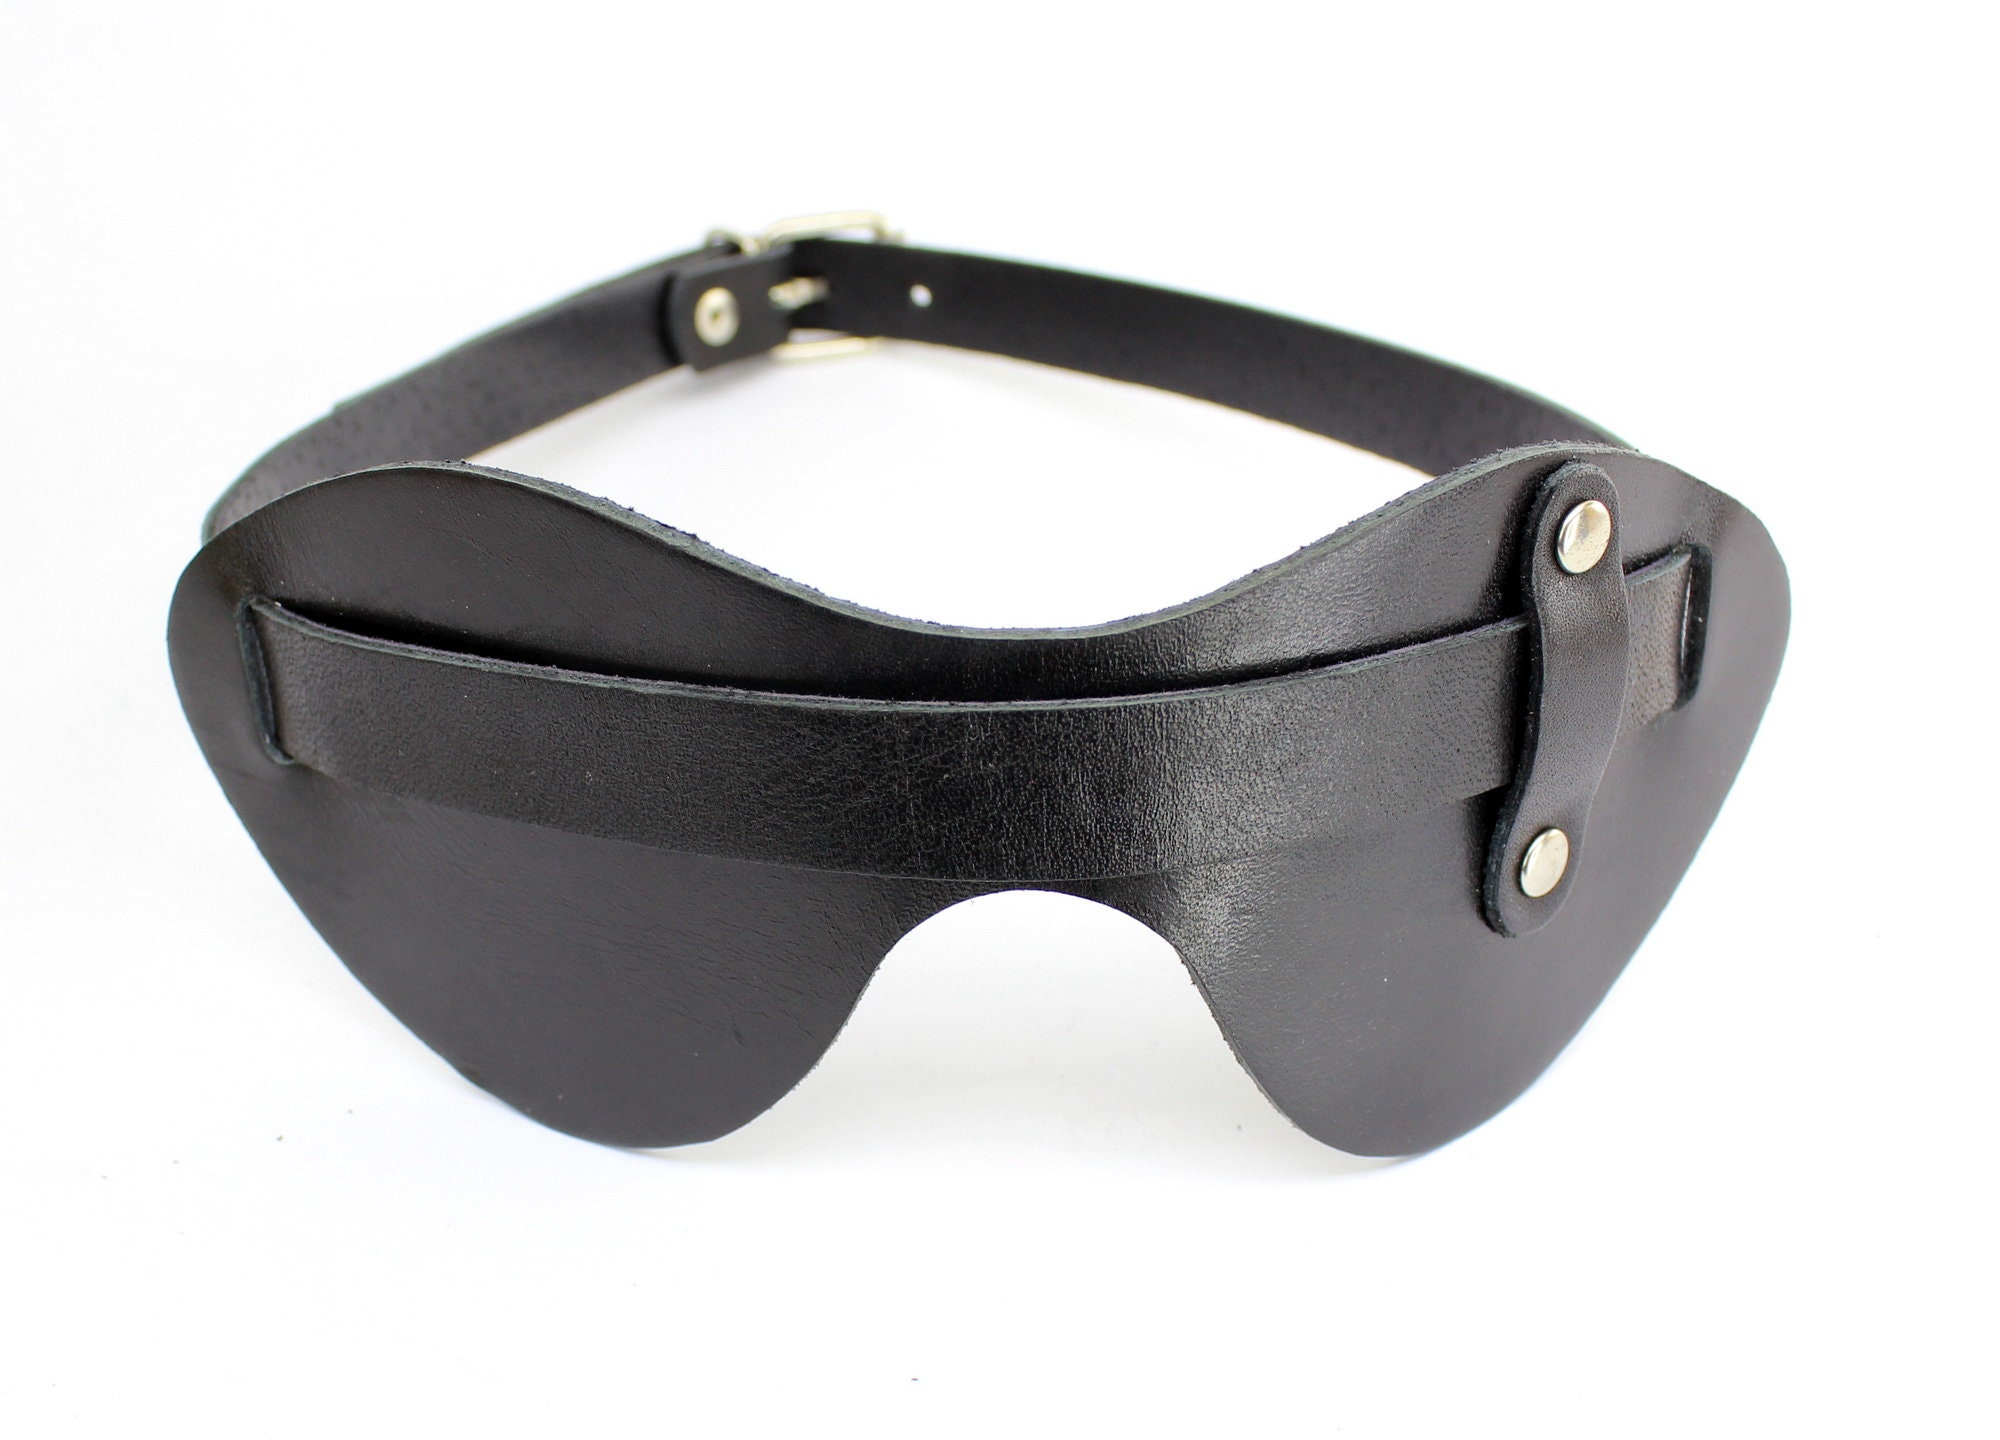 Leather Mask Blindfold-leather Mask Woman Leather Mask - Etsy